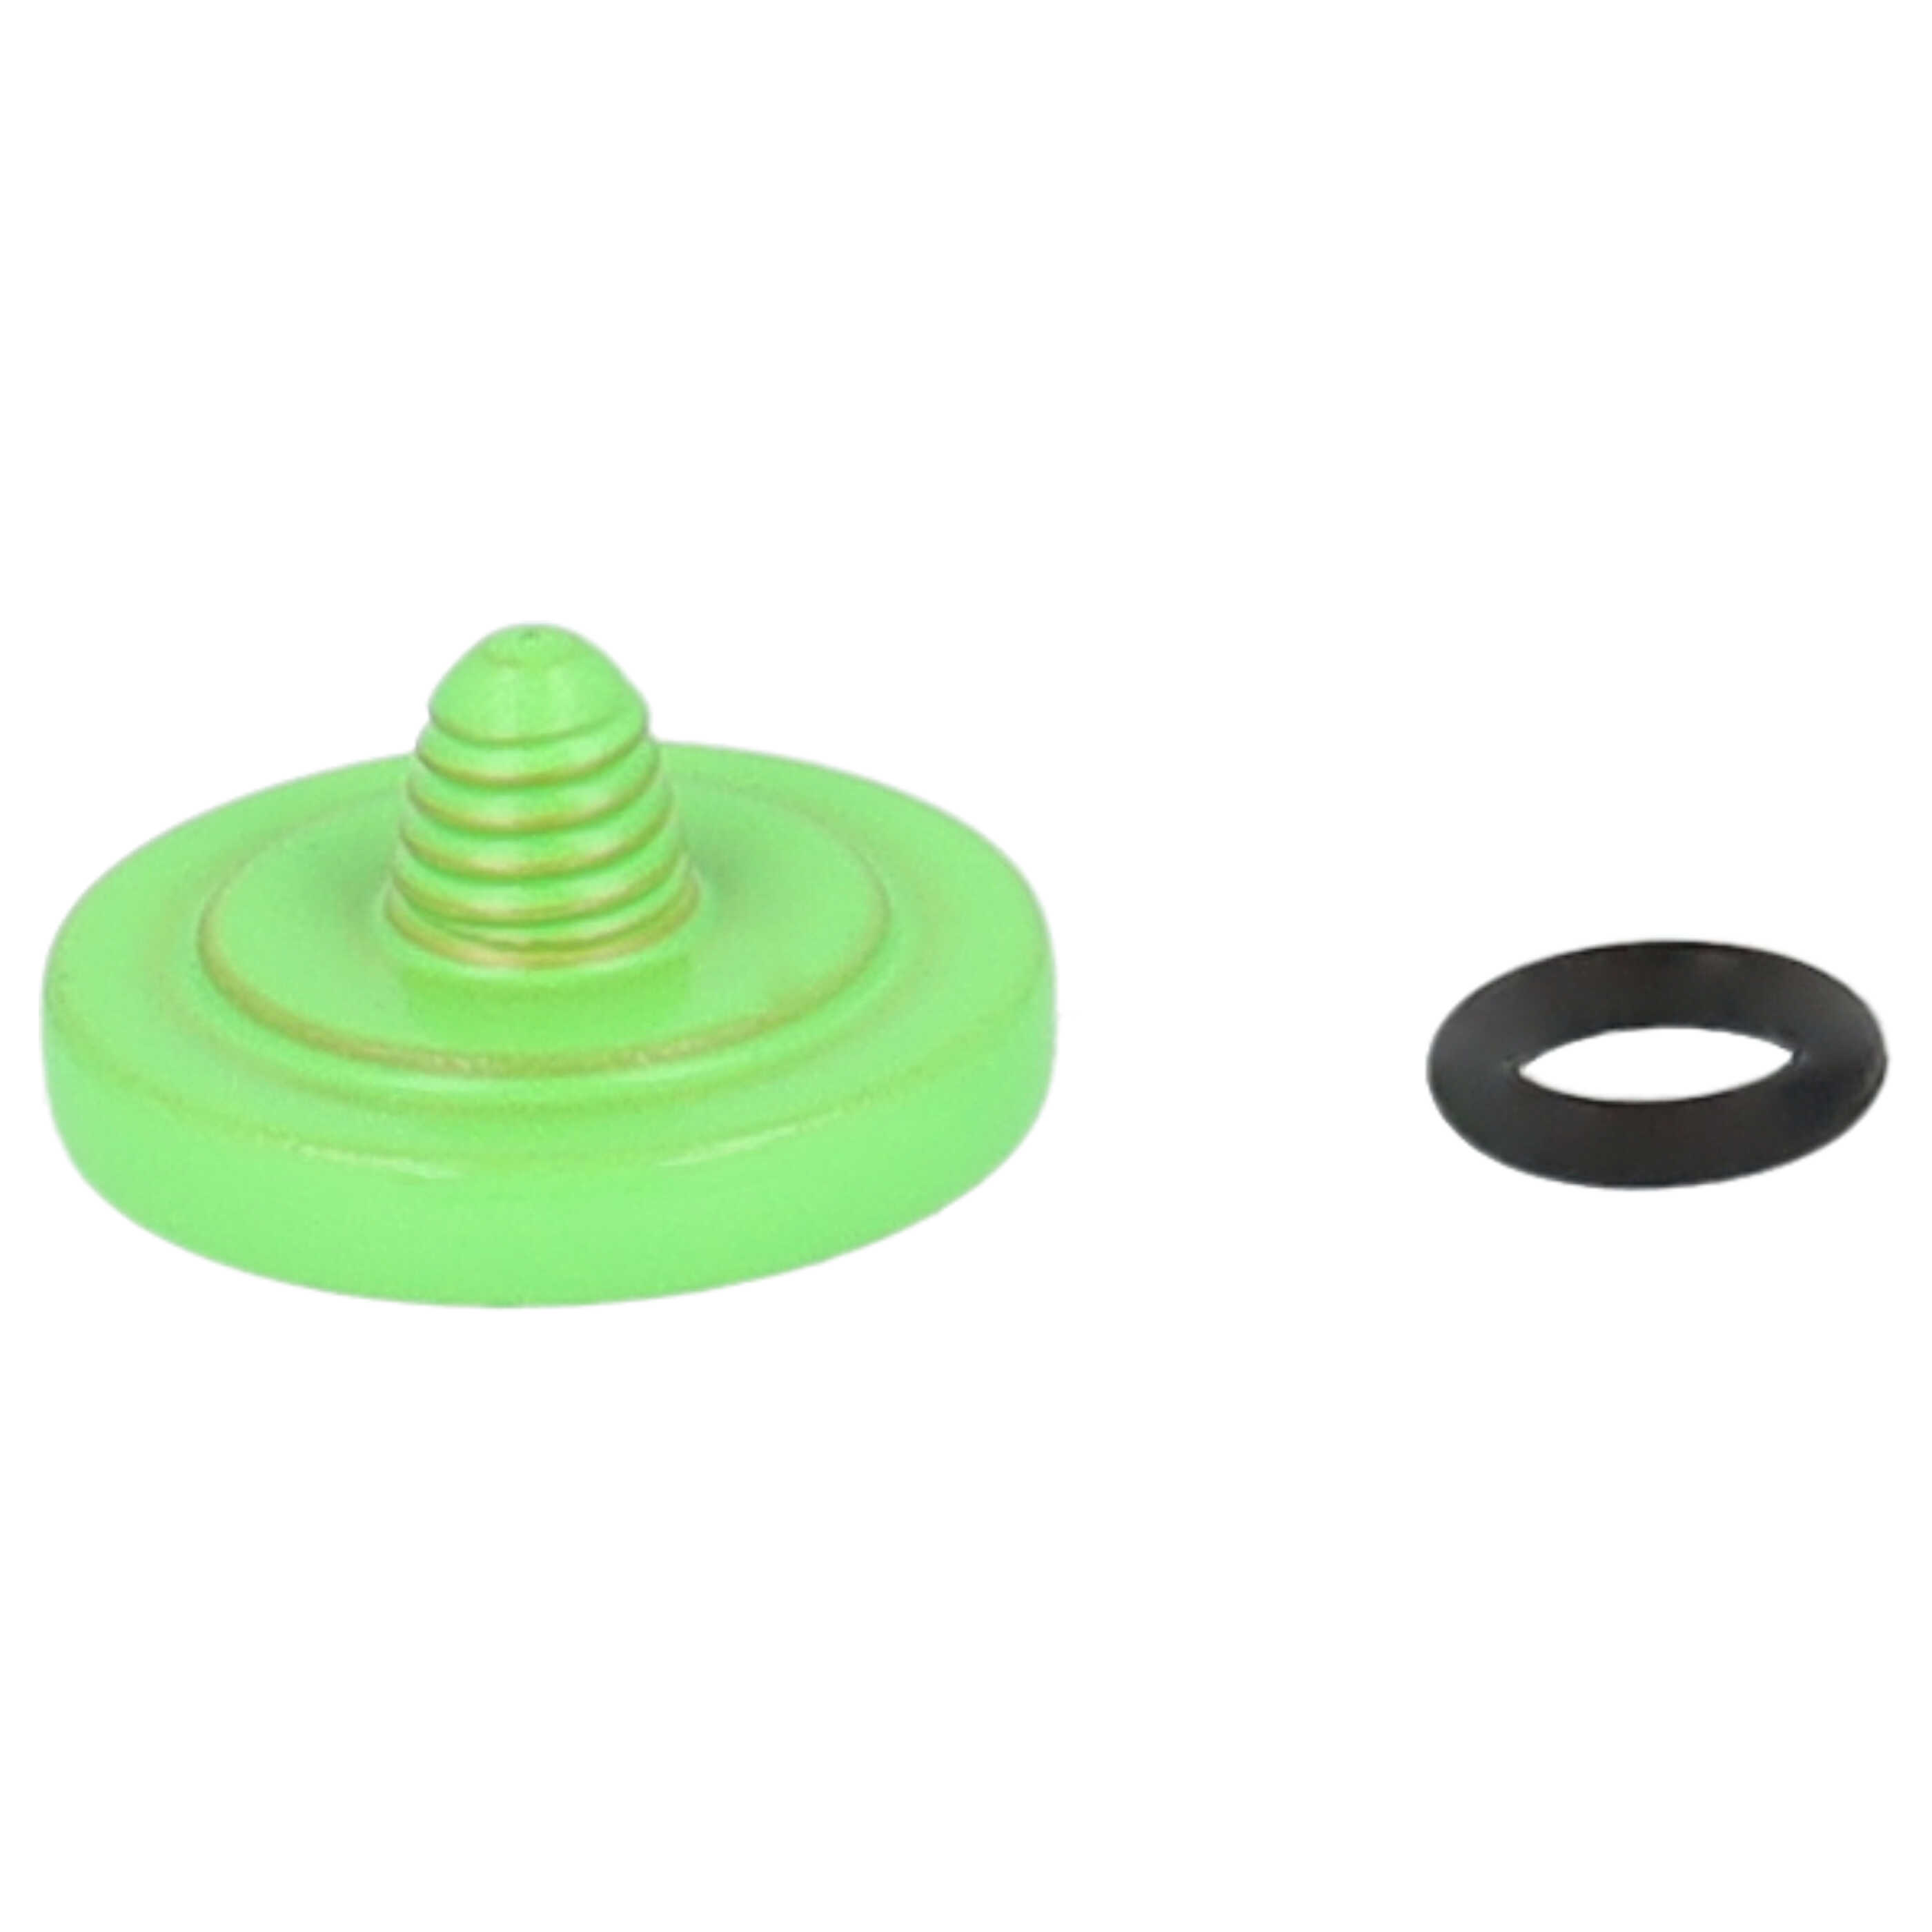 Release Button suitable for X-E1 FujifilmCamera etc. - Metal, Green